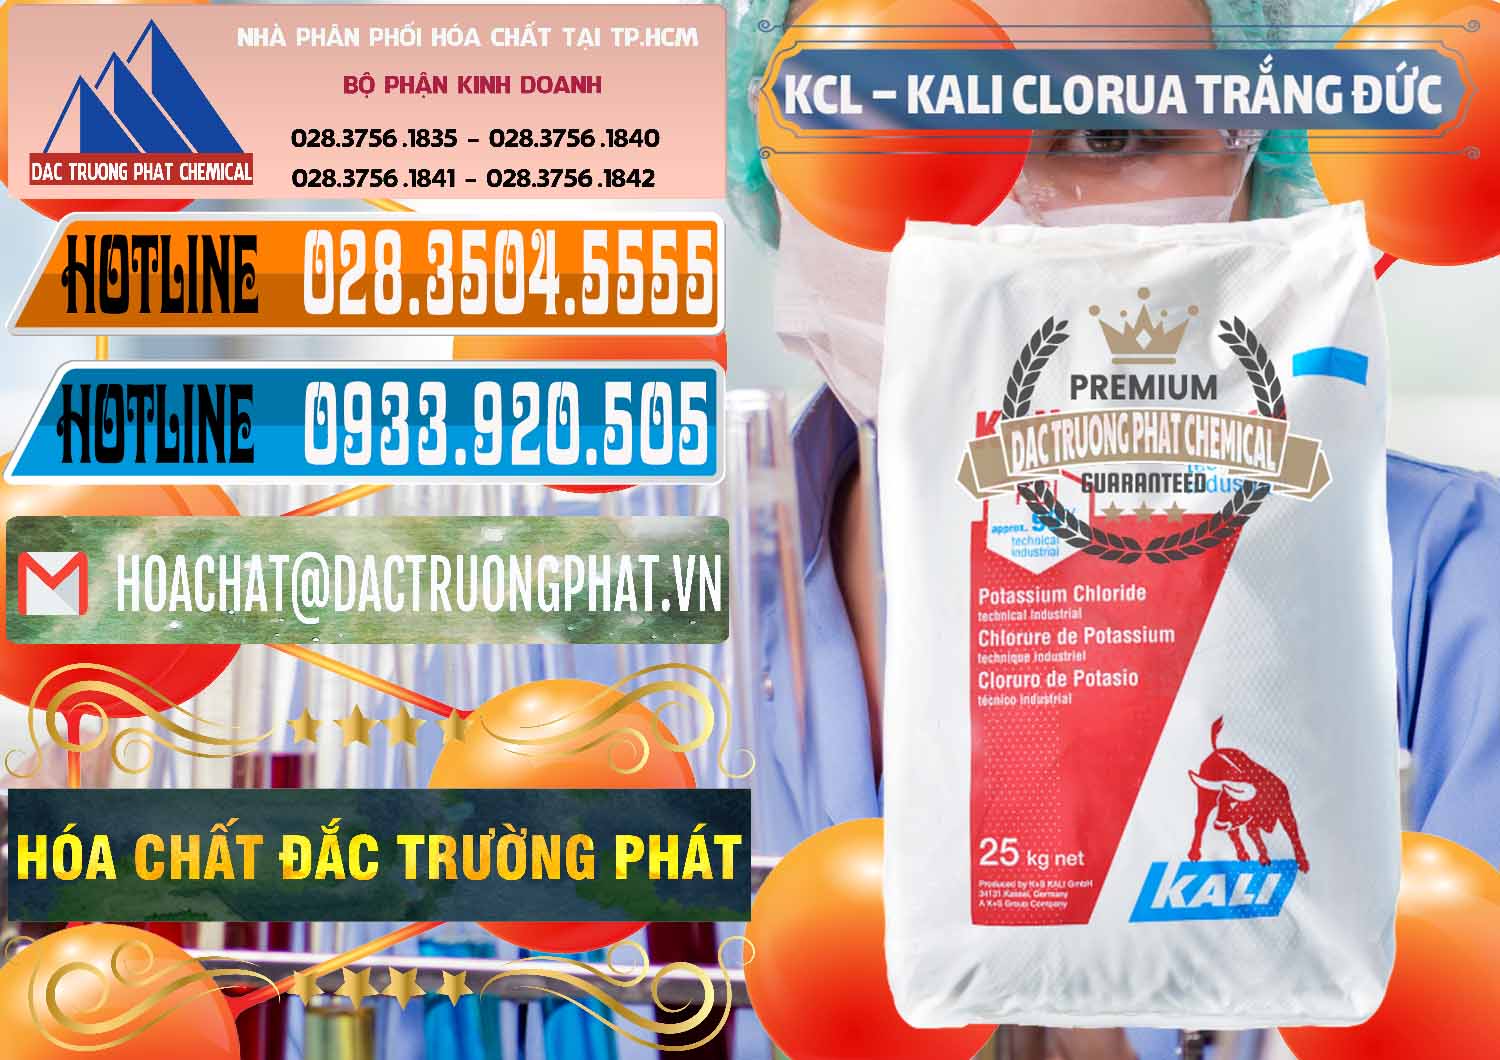 Nơi nhập khẩu - bán KCL – Kali Clorua Trắng Đức Germany - 0086 - Chuyên phân phối _ kinh doanh hóa chất tại TP.HCM - stmp.net